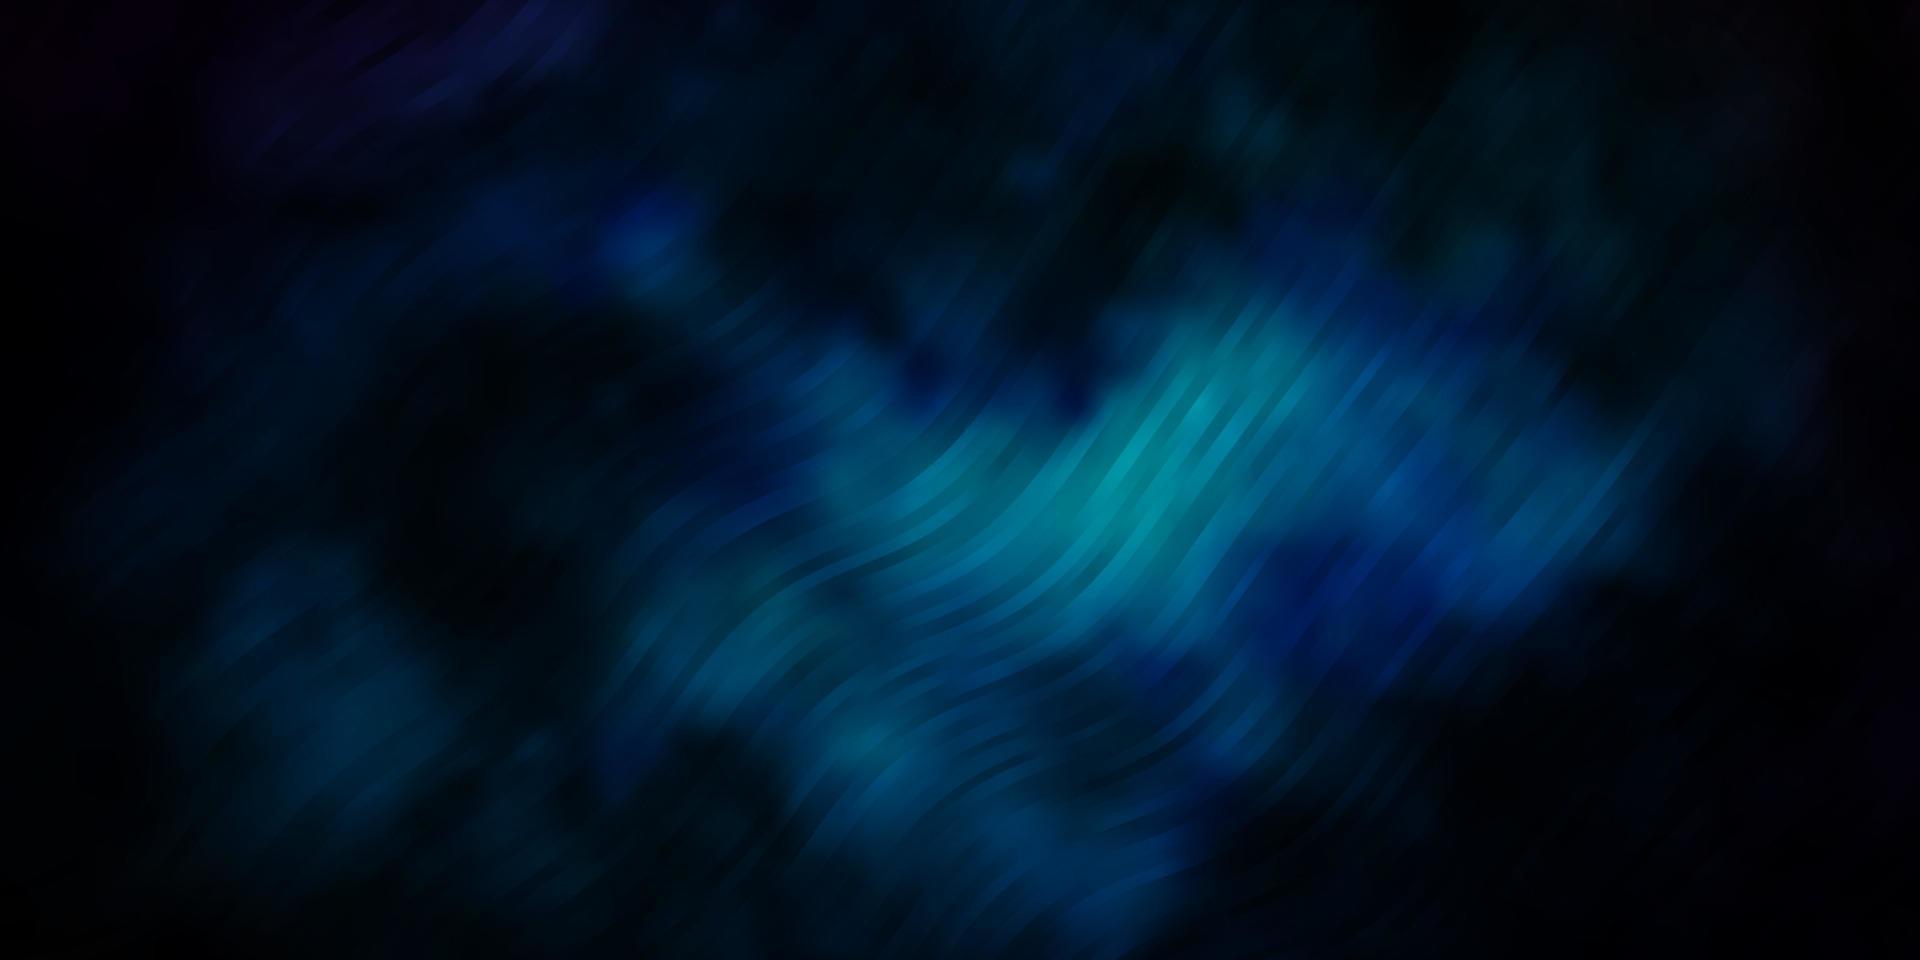 textura de vector azul oscuro con arco circular.